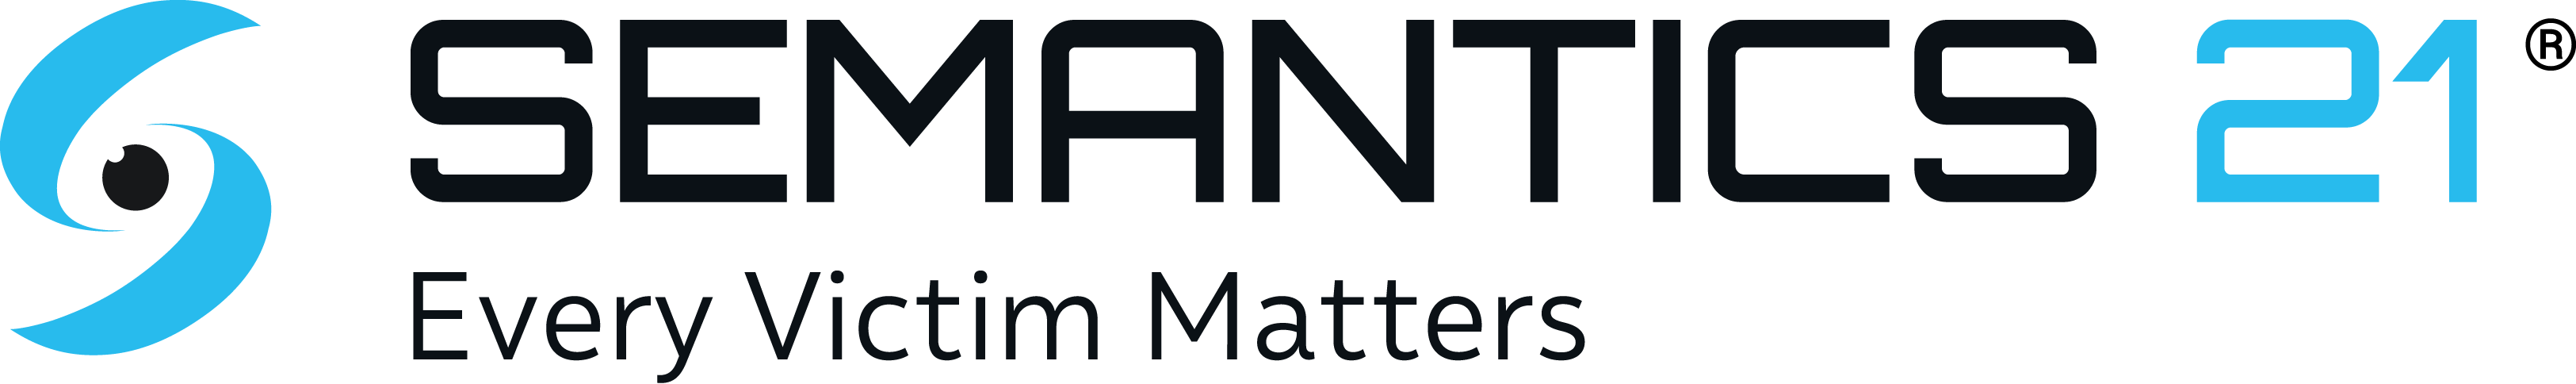 semantics 21 logo